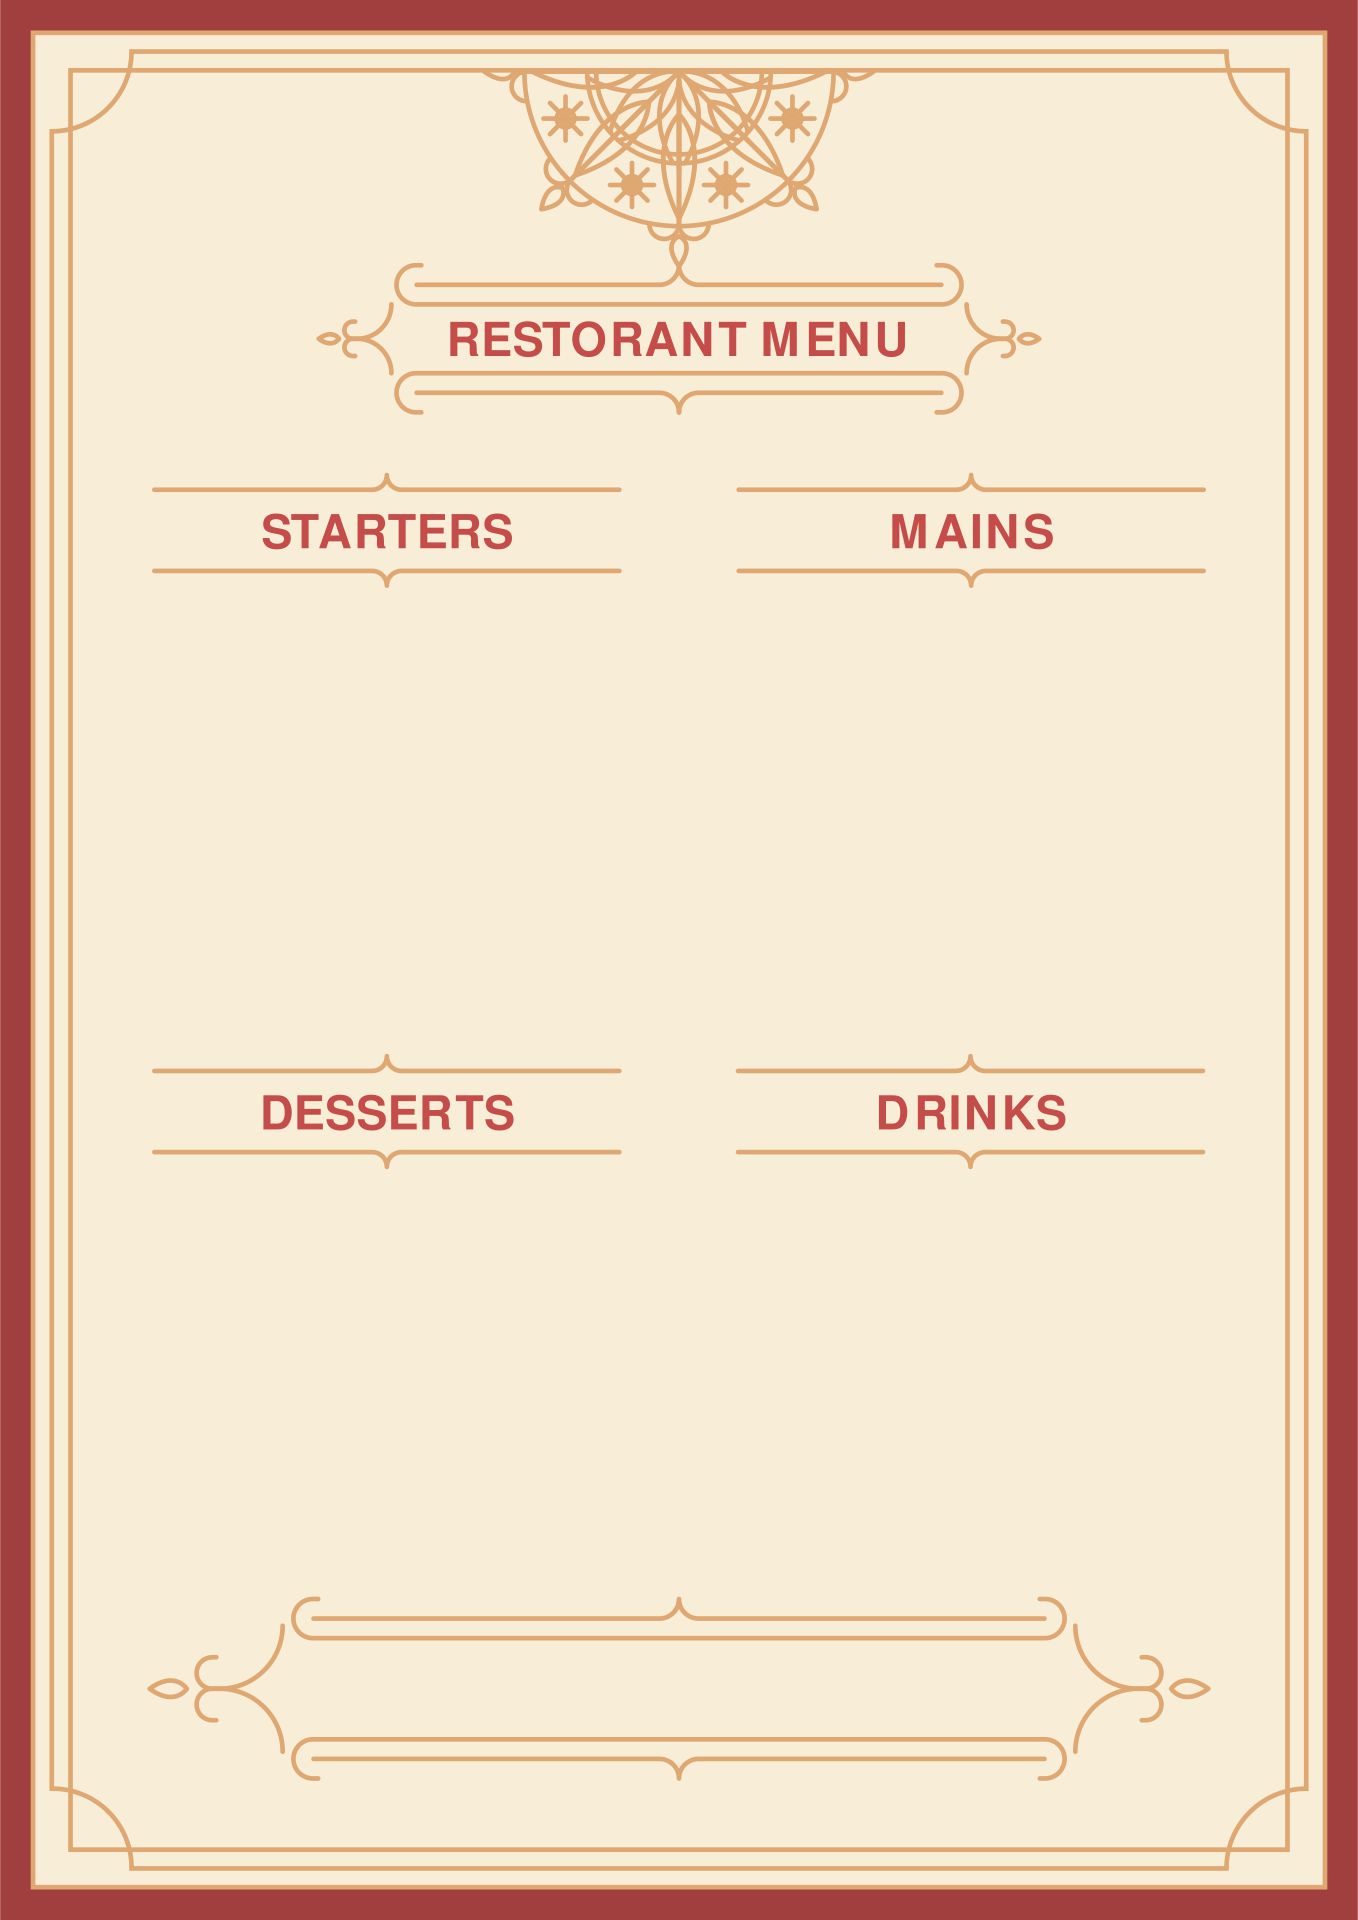 blank menu calendar